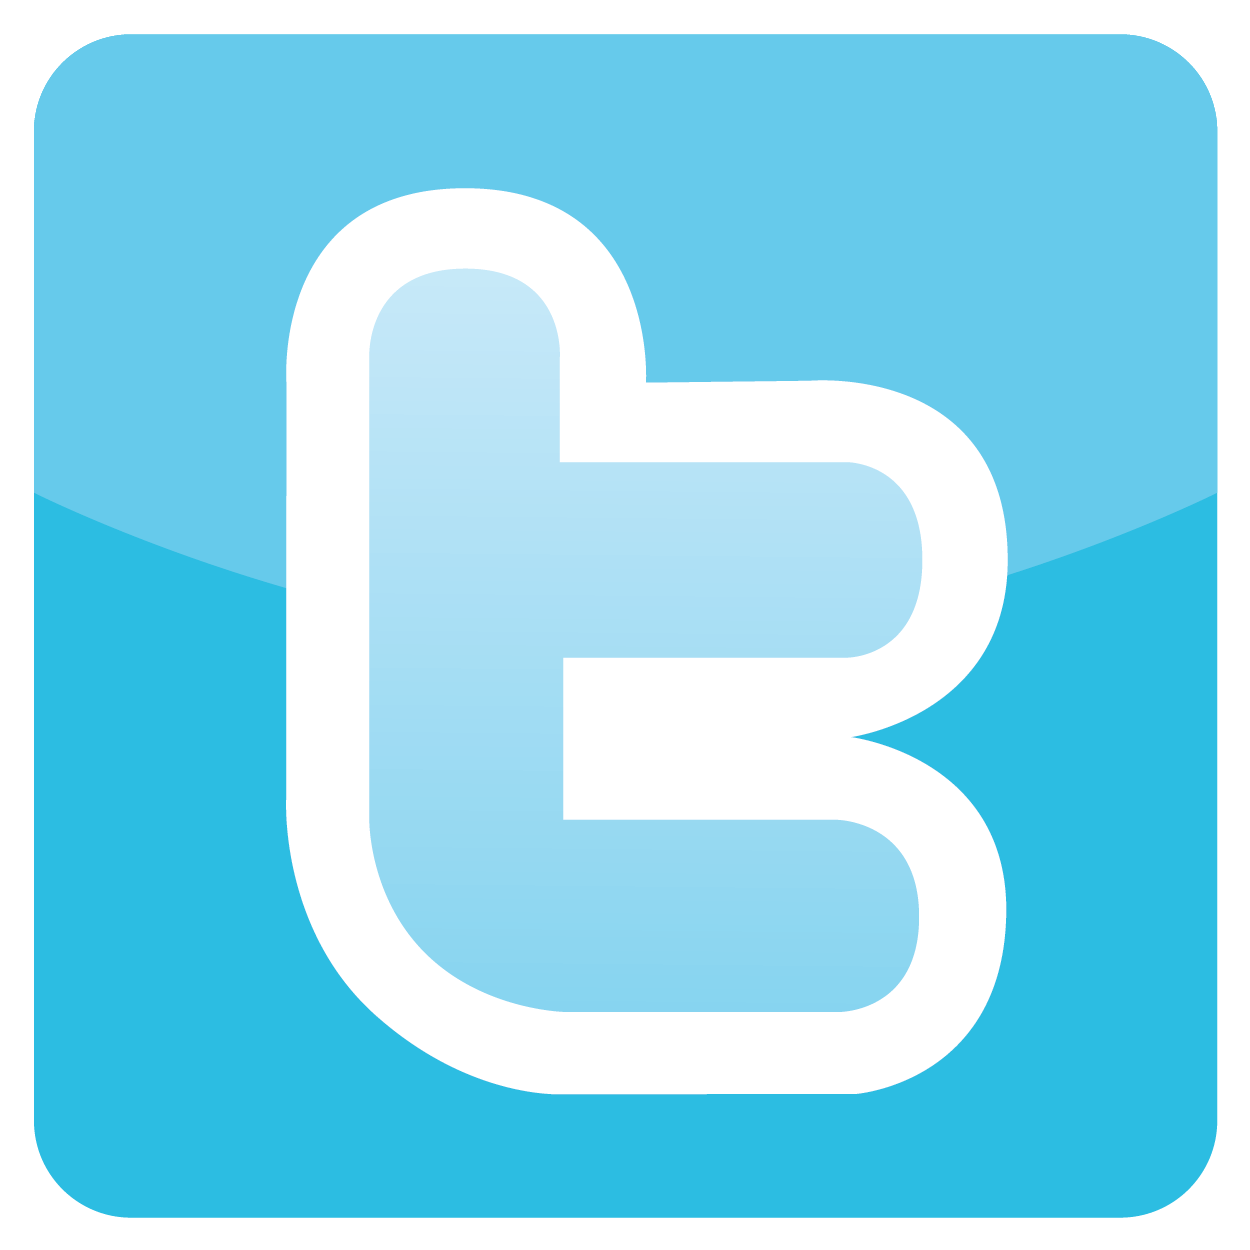 Tweet Logo PNG Photos